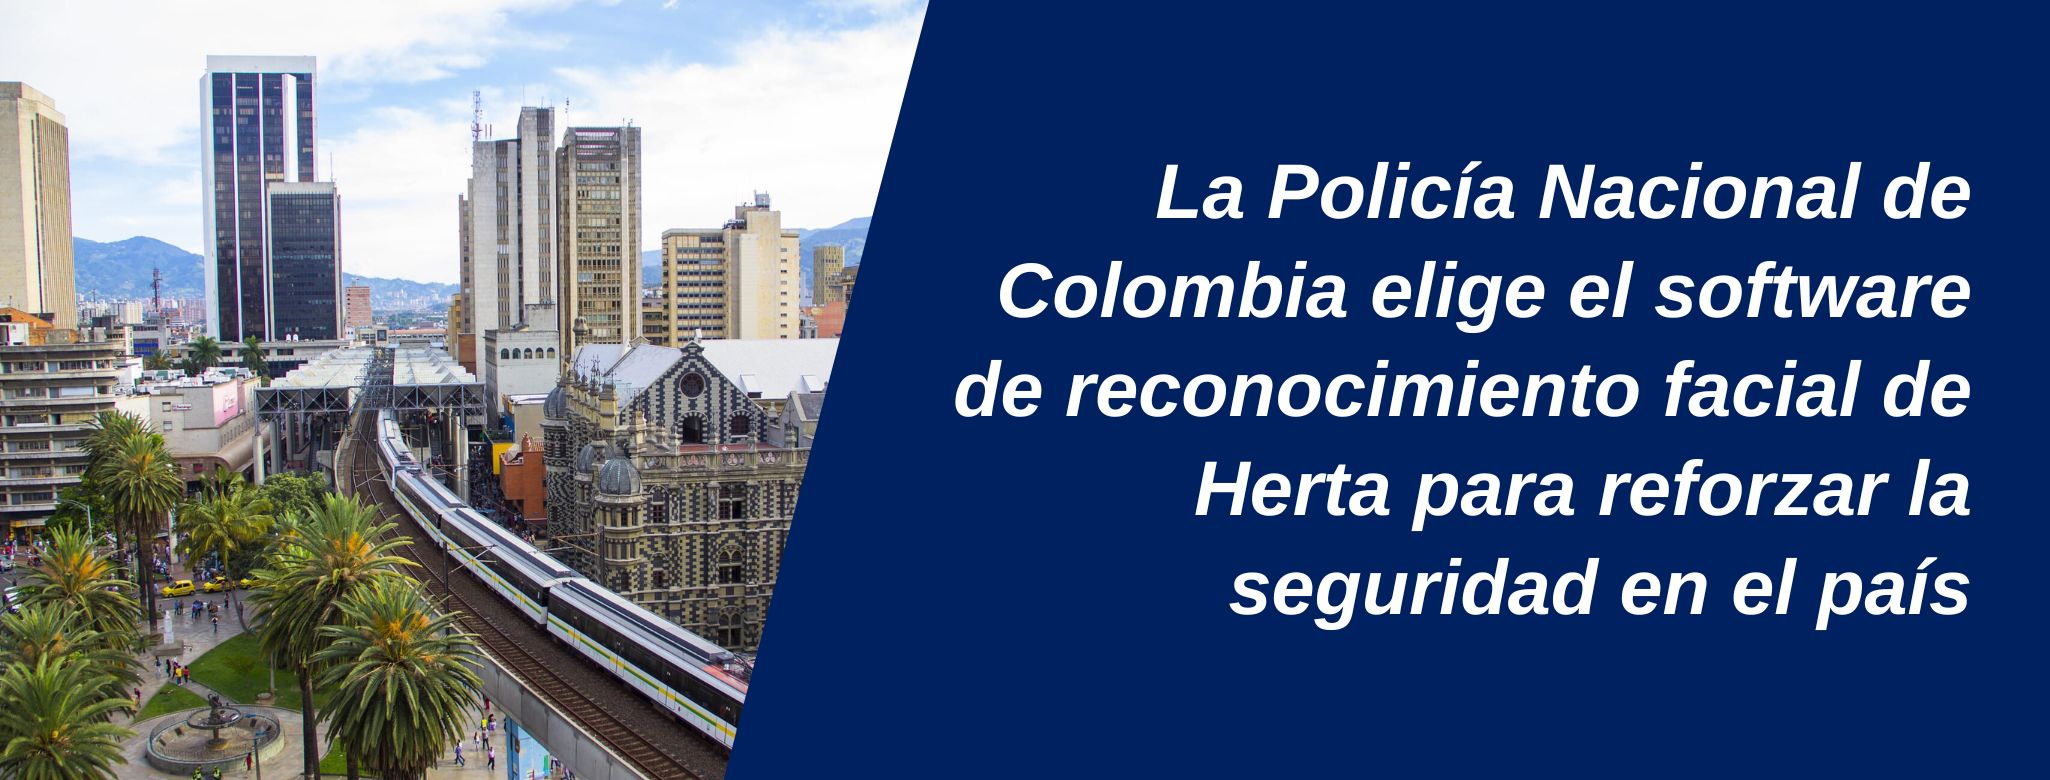 Policía de Colombia software reconocimiento facial Herta